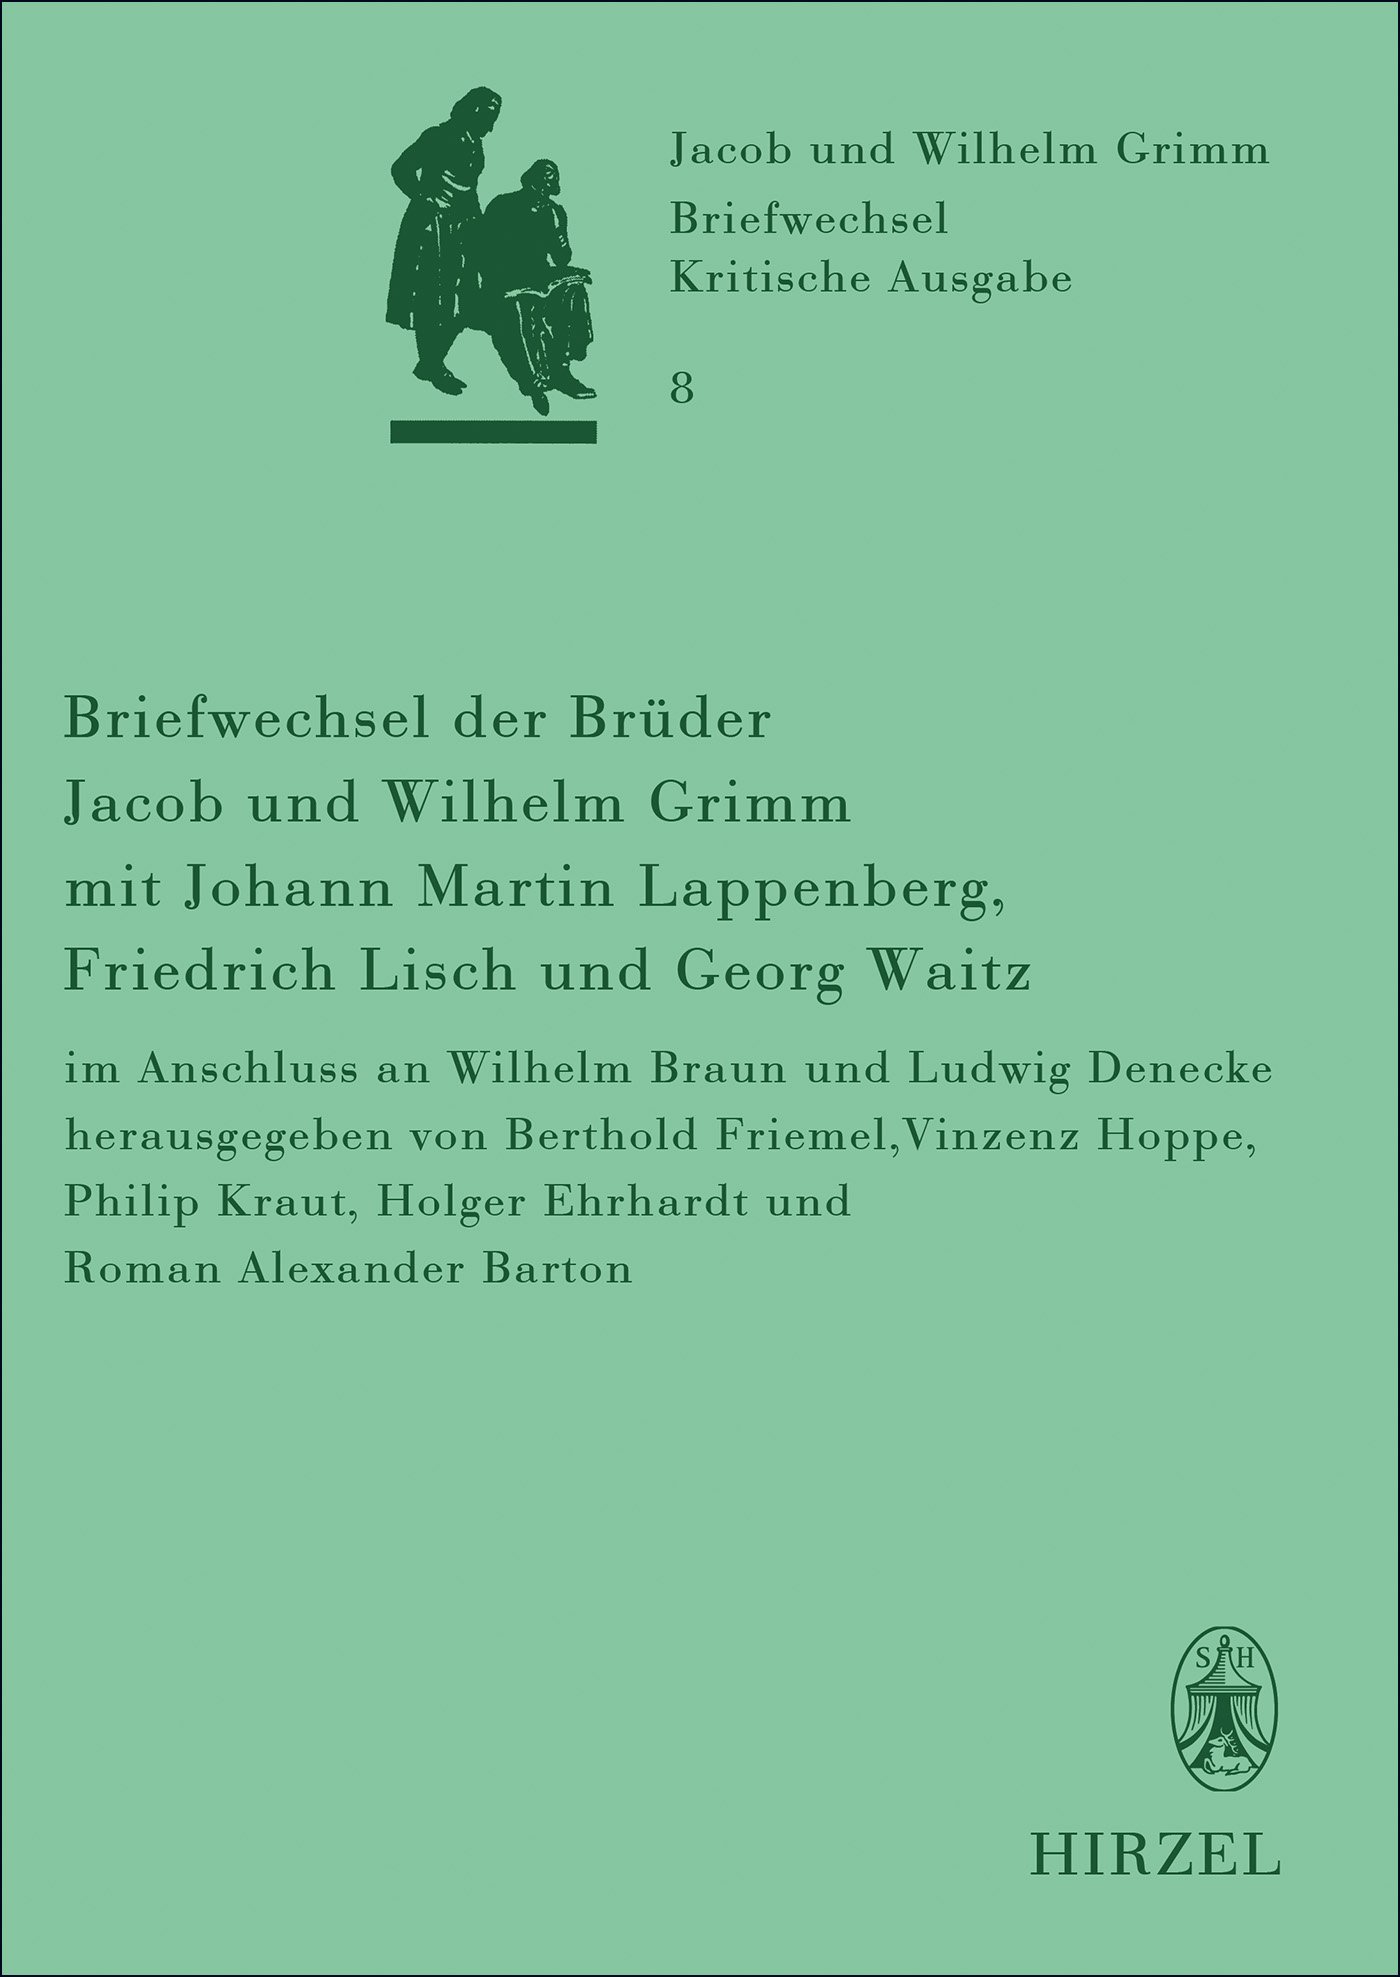 Briefwechsel der Brüder Jacob und Wilhelm Grimm mit Johann Martin Lappenberg, Friedrich Lisch und Georg Waitz